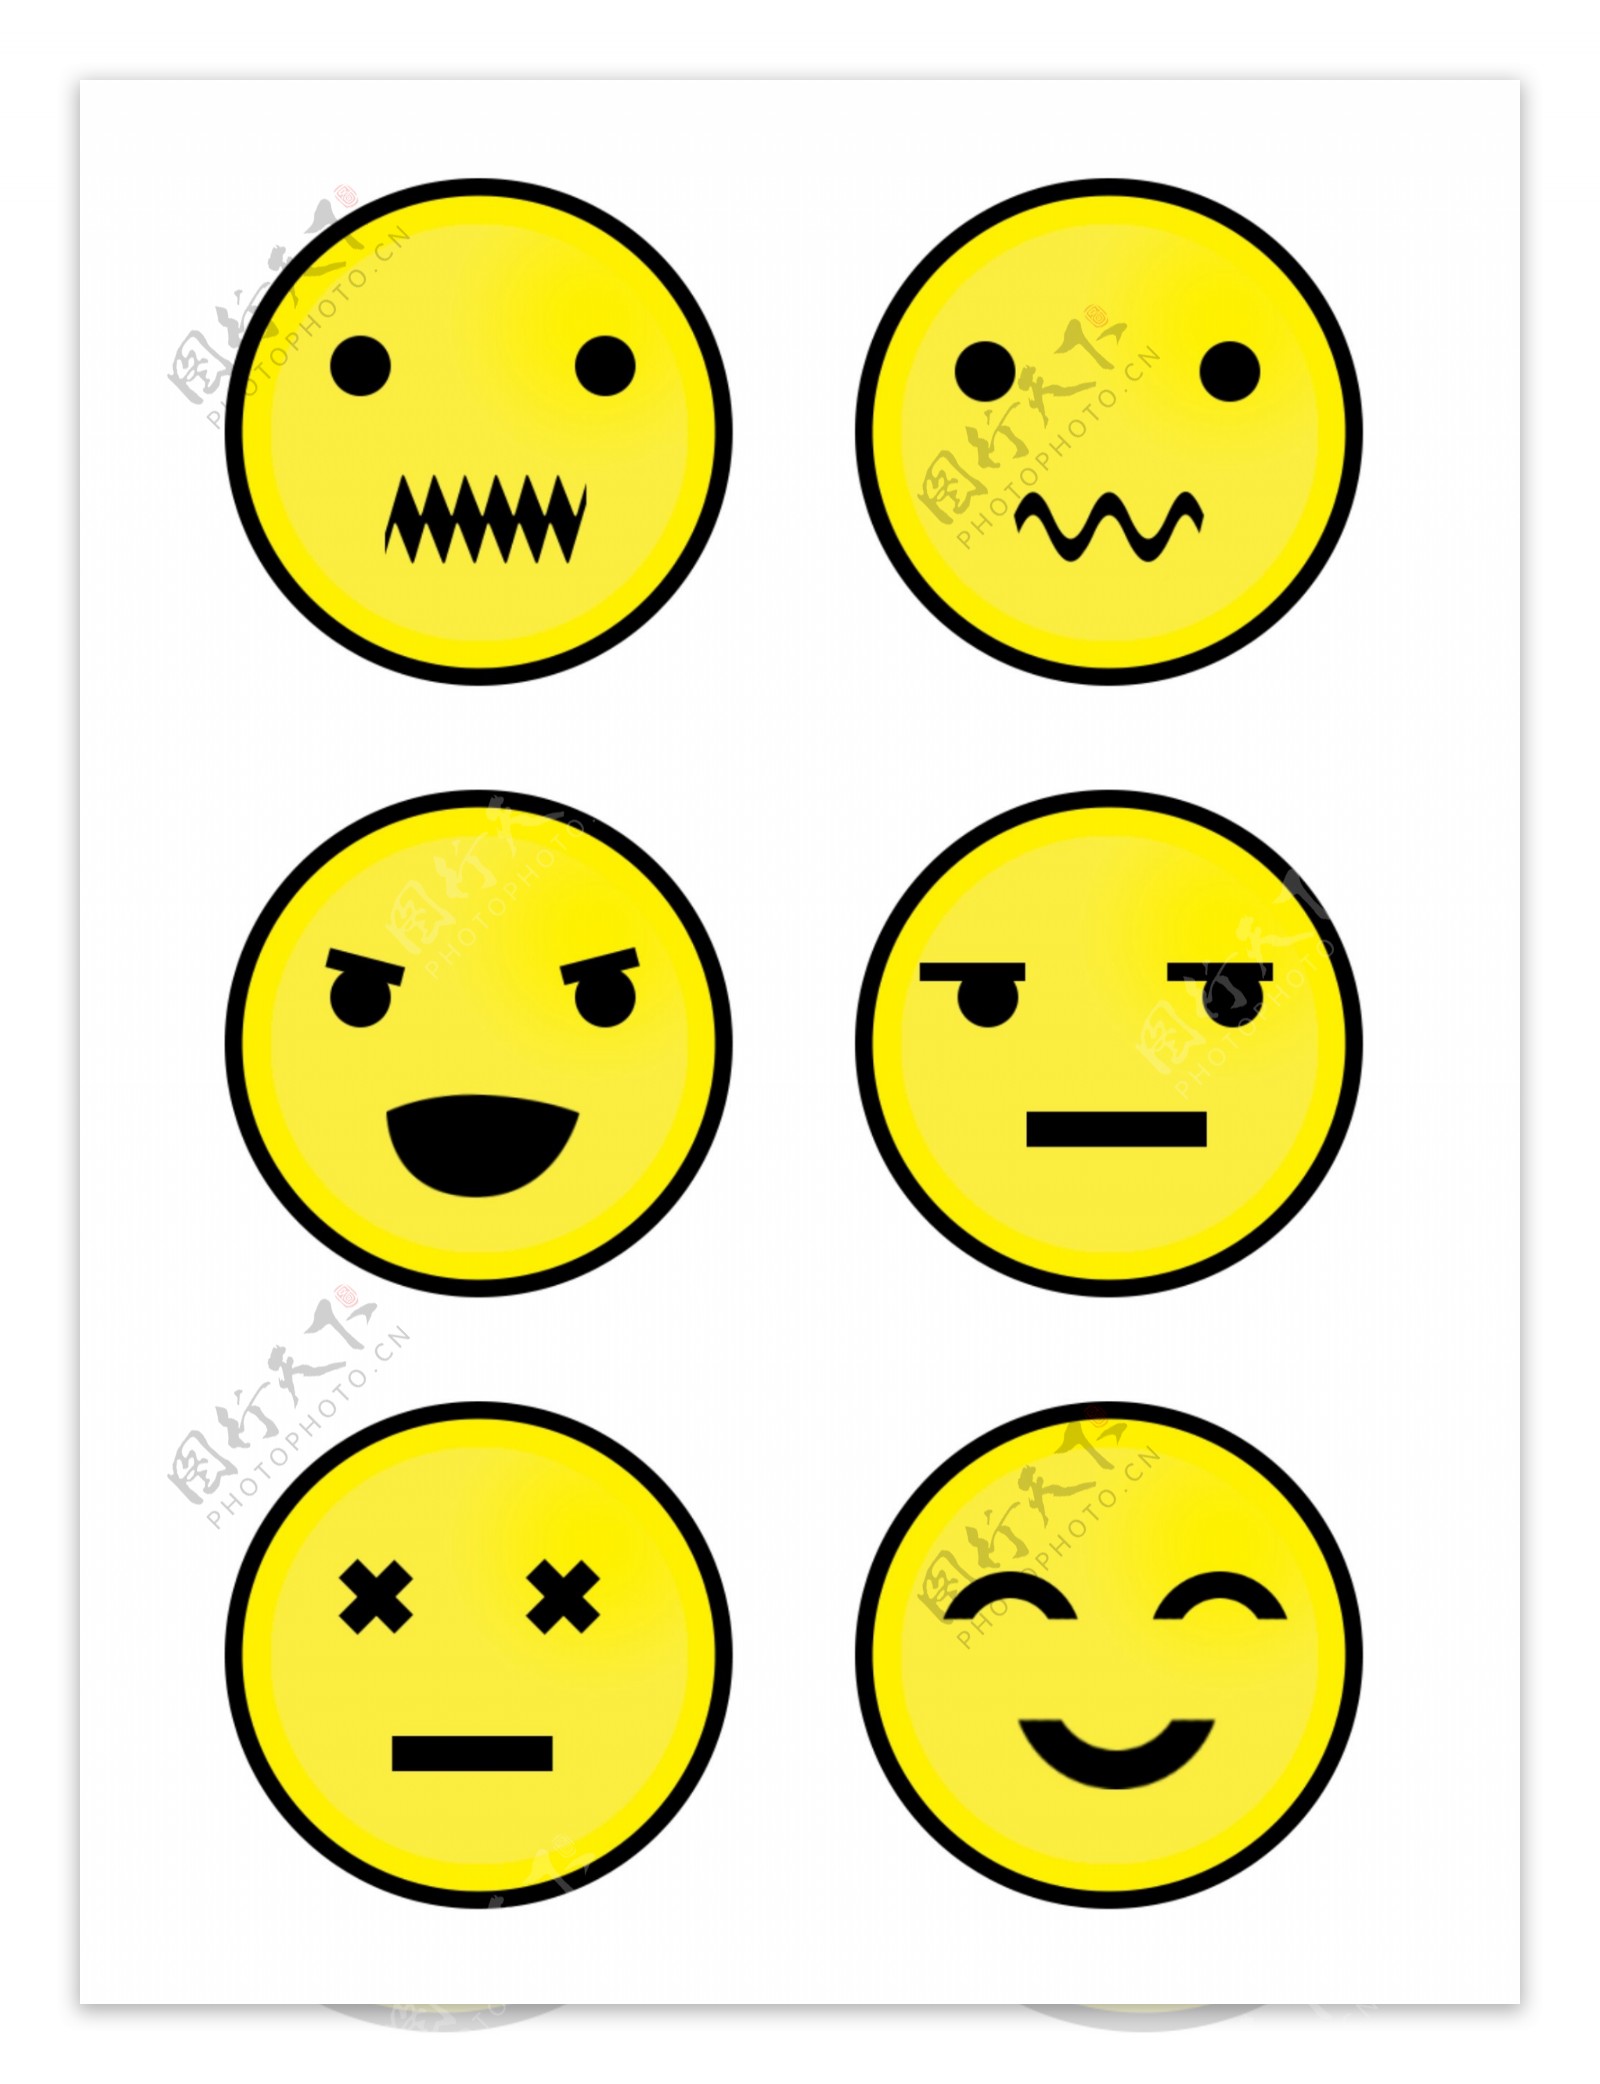 黄色小人图标表情包素材可商用